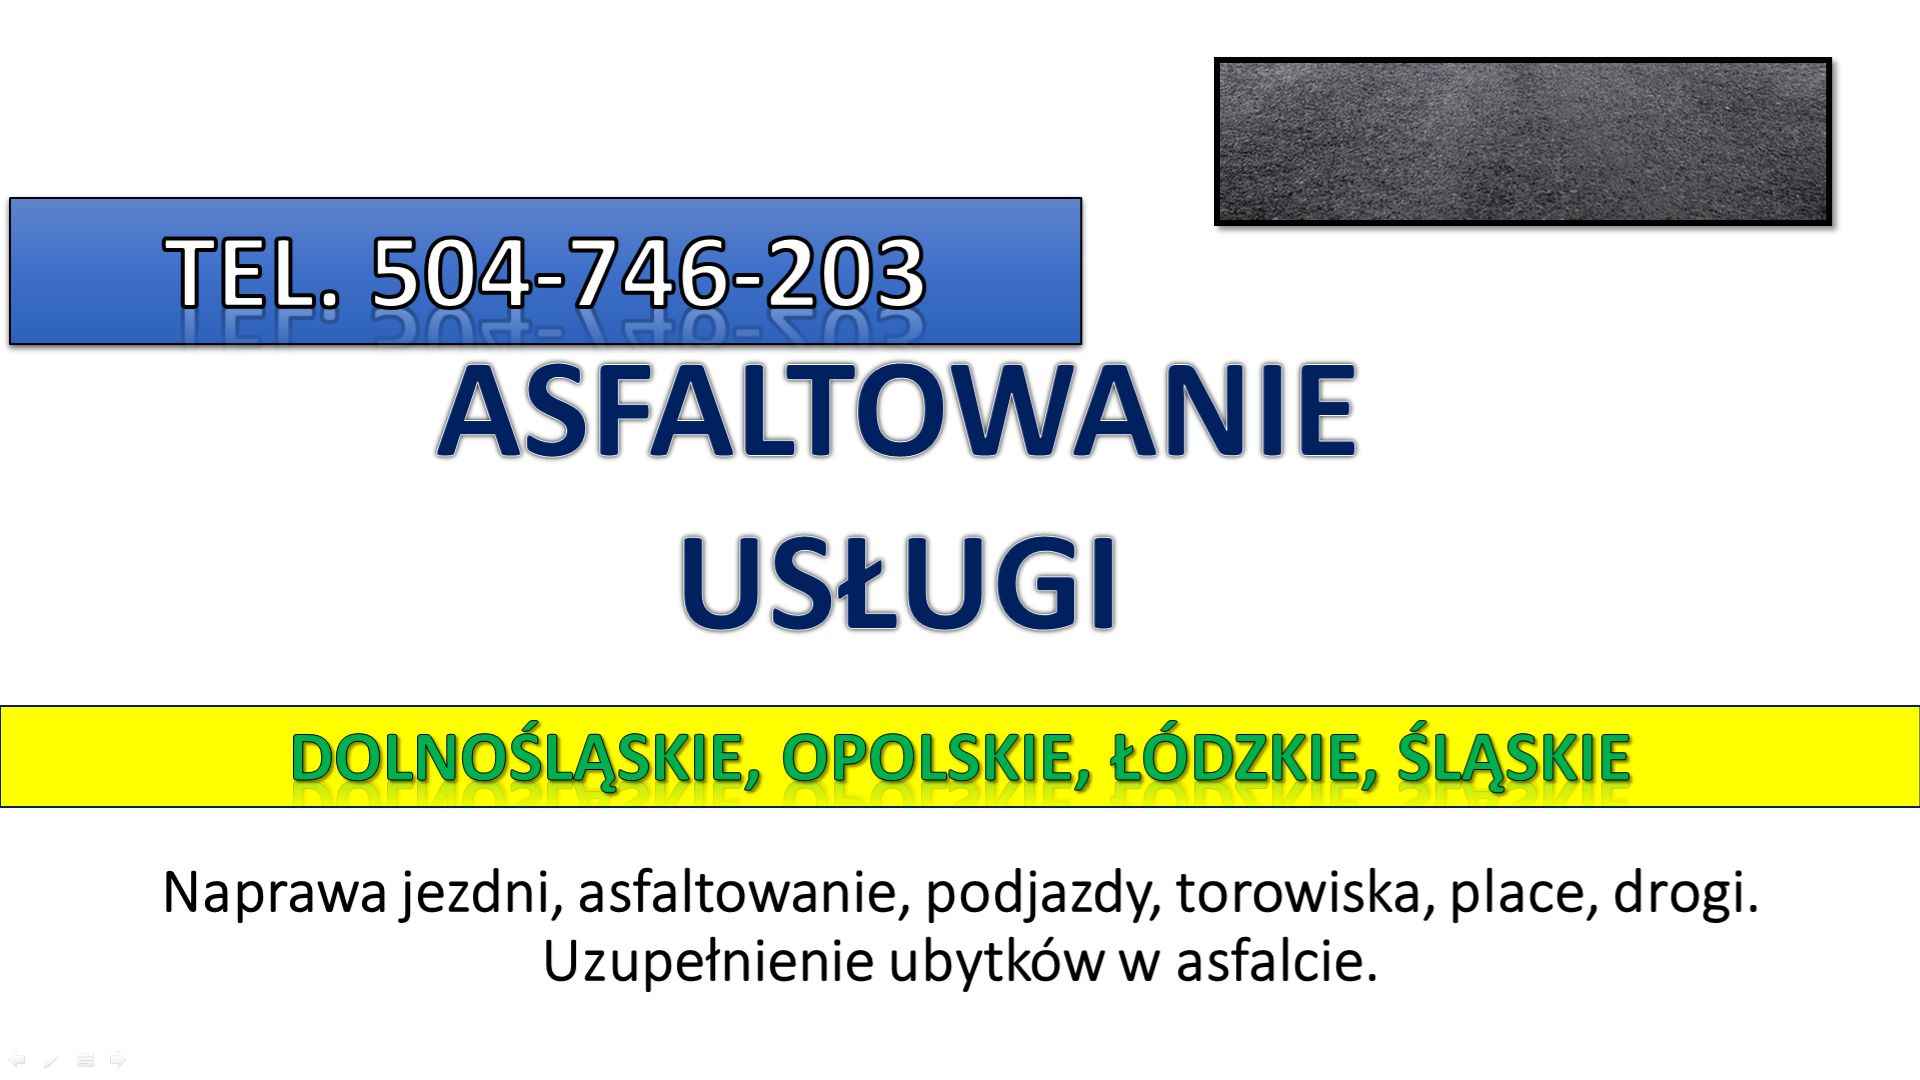 Asflaltowanie, t. 504-746-203, Wrocław, Łódź, Opole, układanie asfaltu Psie Pole - zdjęcie 4